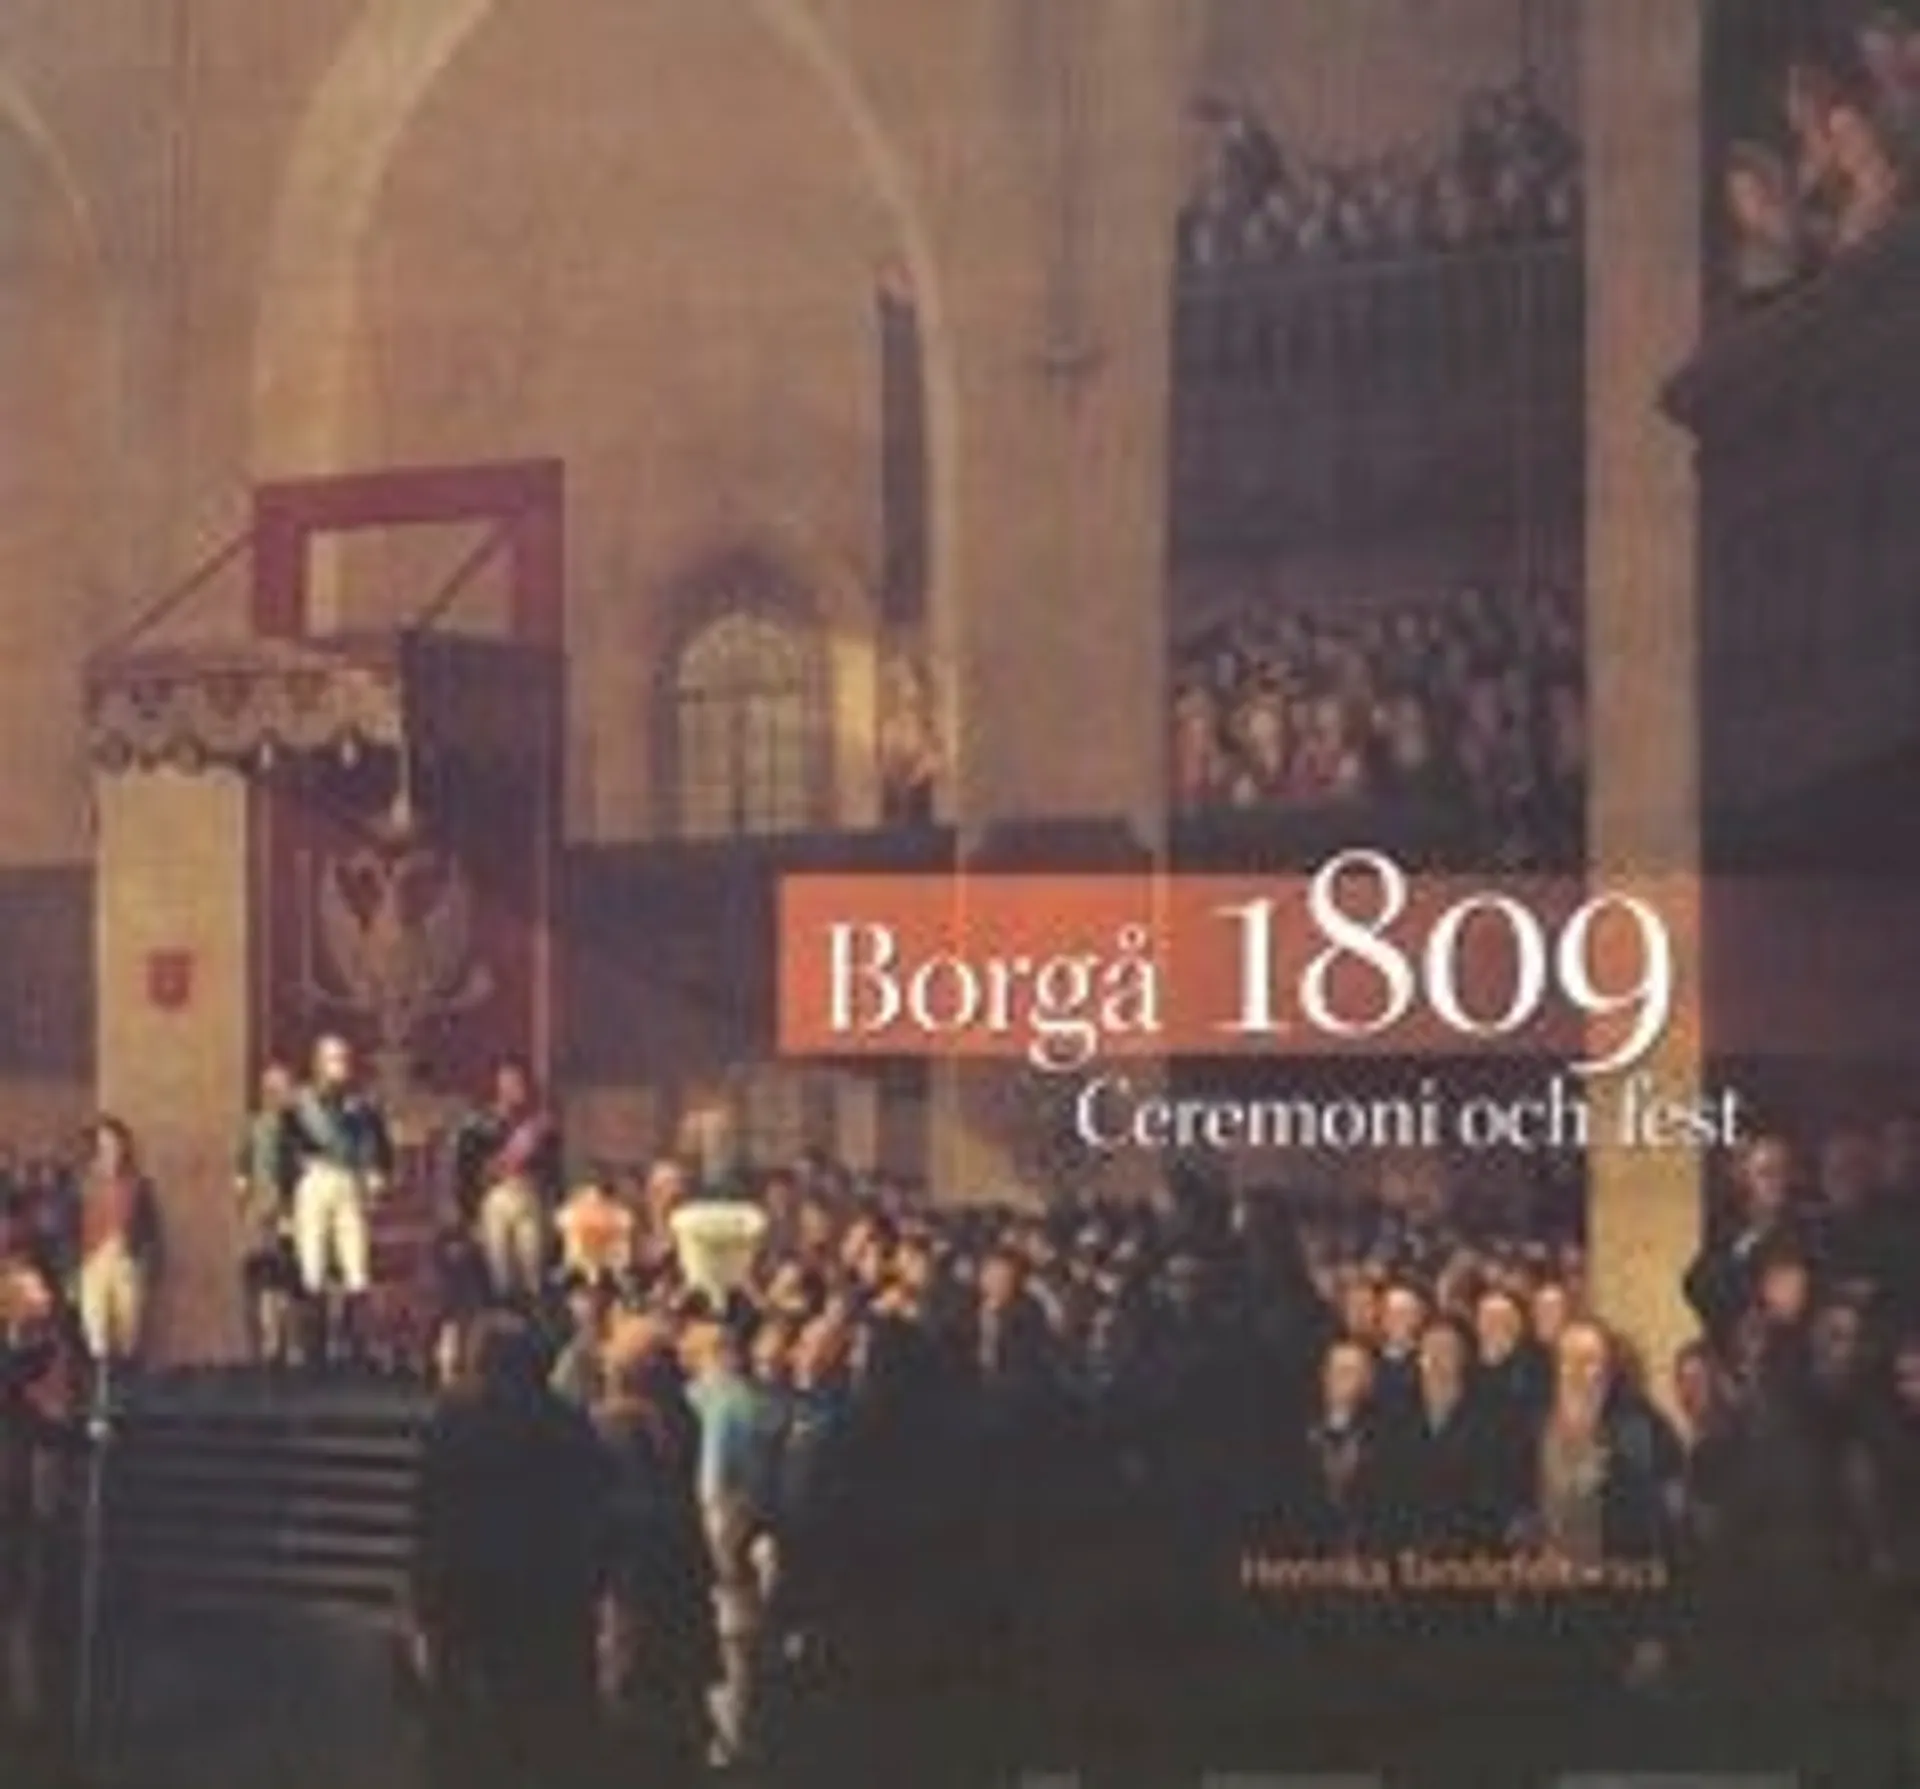 Tandefelt, Borgå 1809 - ceremoni och fest